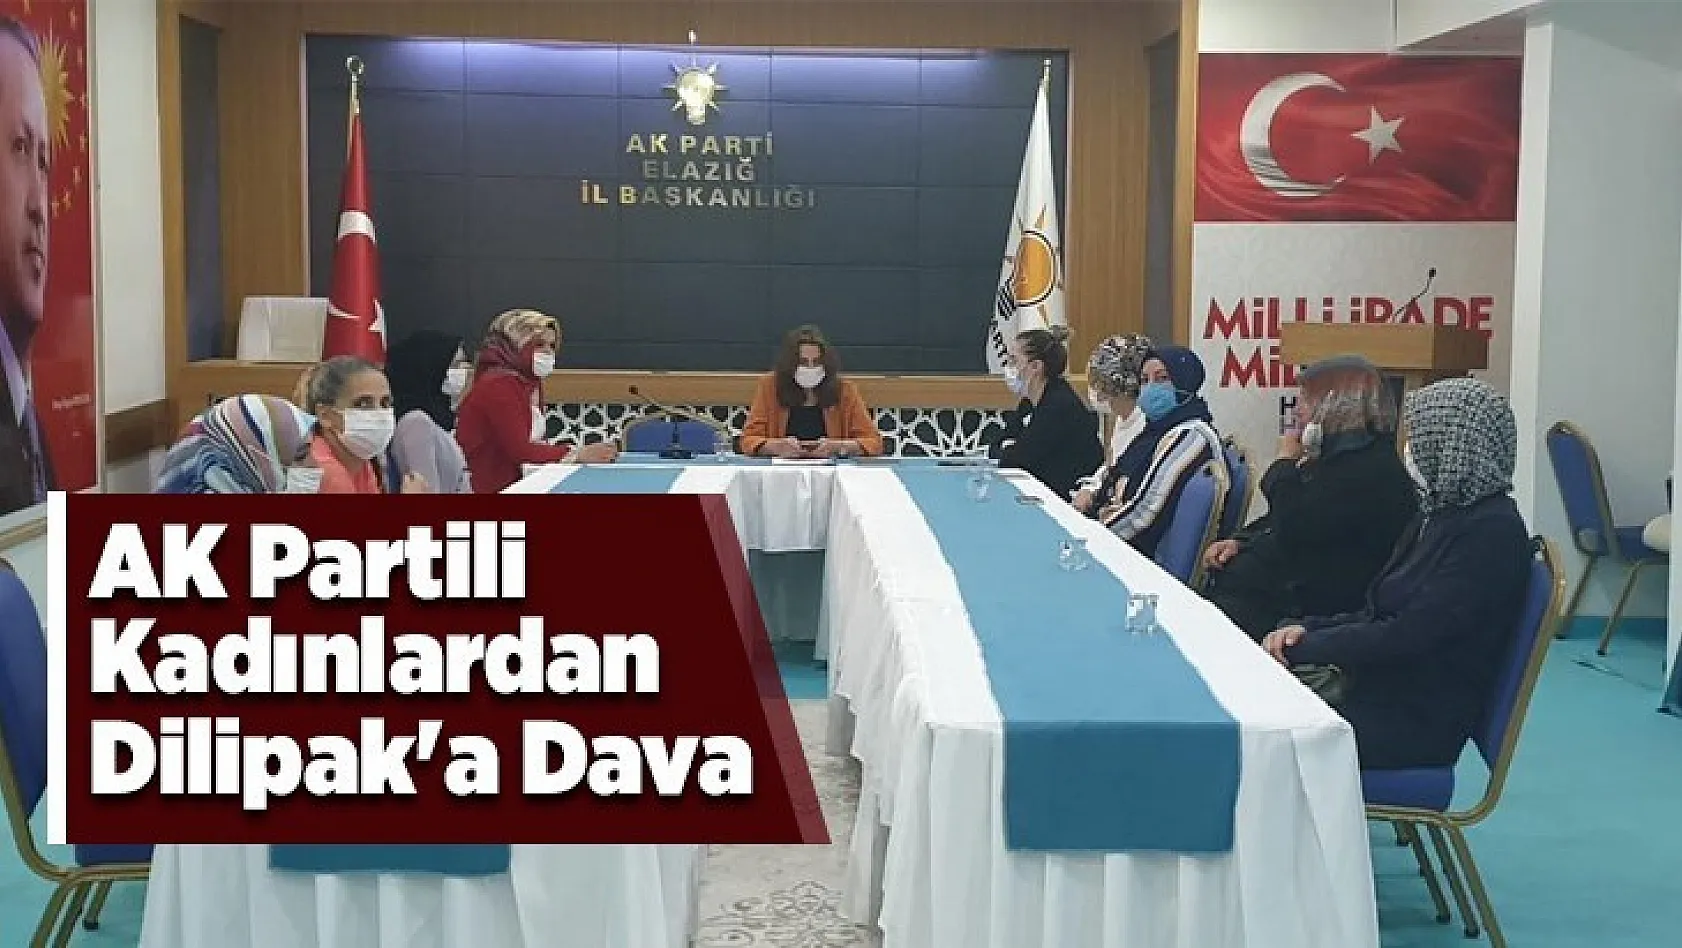 AK Partili Kadınlardan Dilipak'a Dava